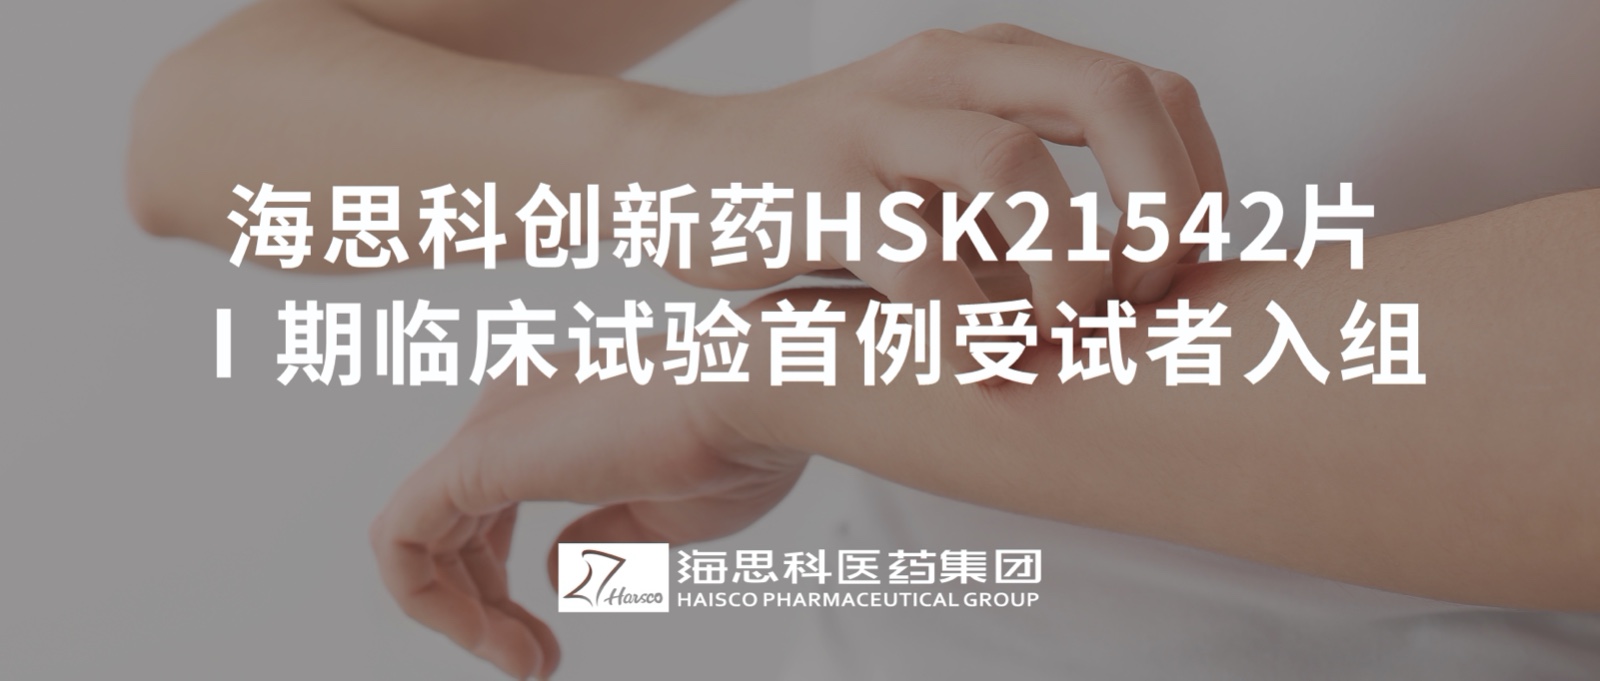 恒峰官网g22创新药HSK21542片Ⅰ期临床试验首例受试者入组